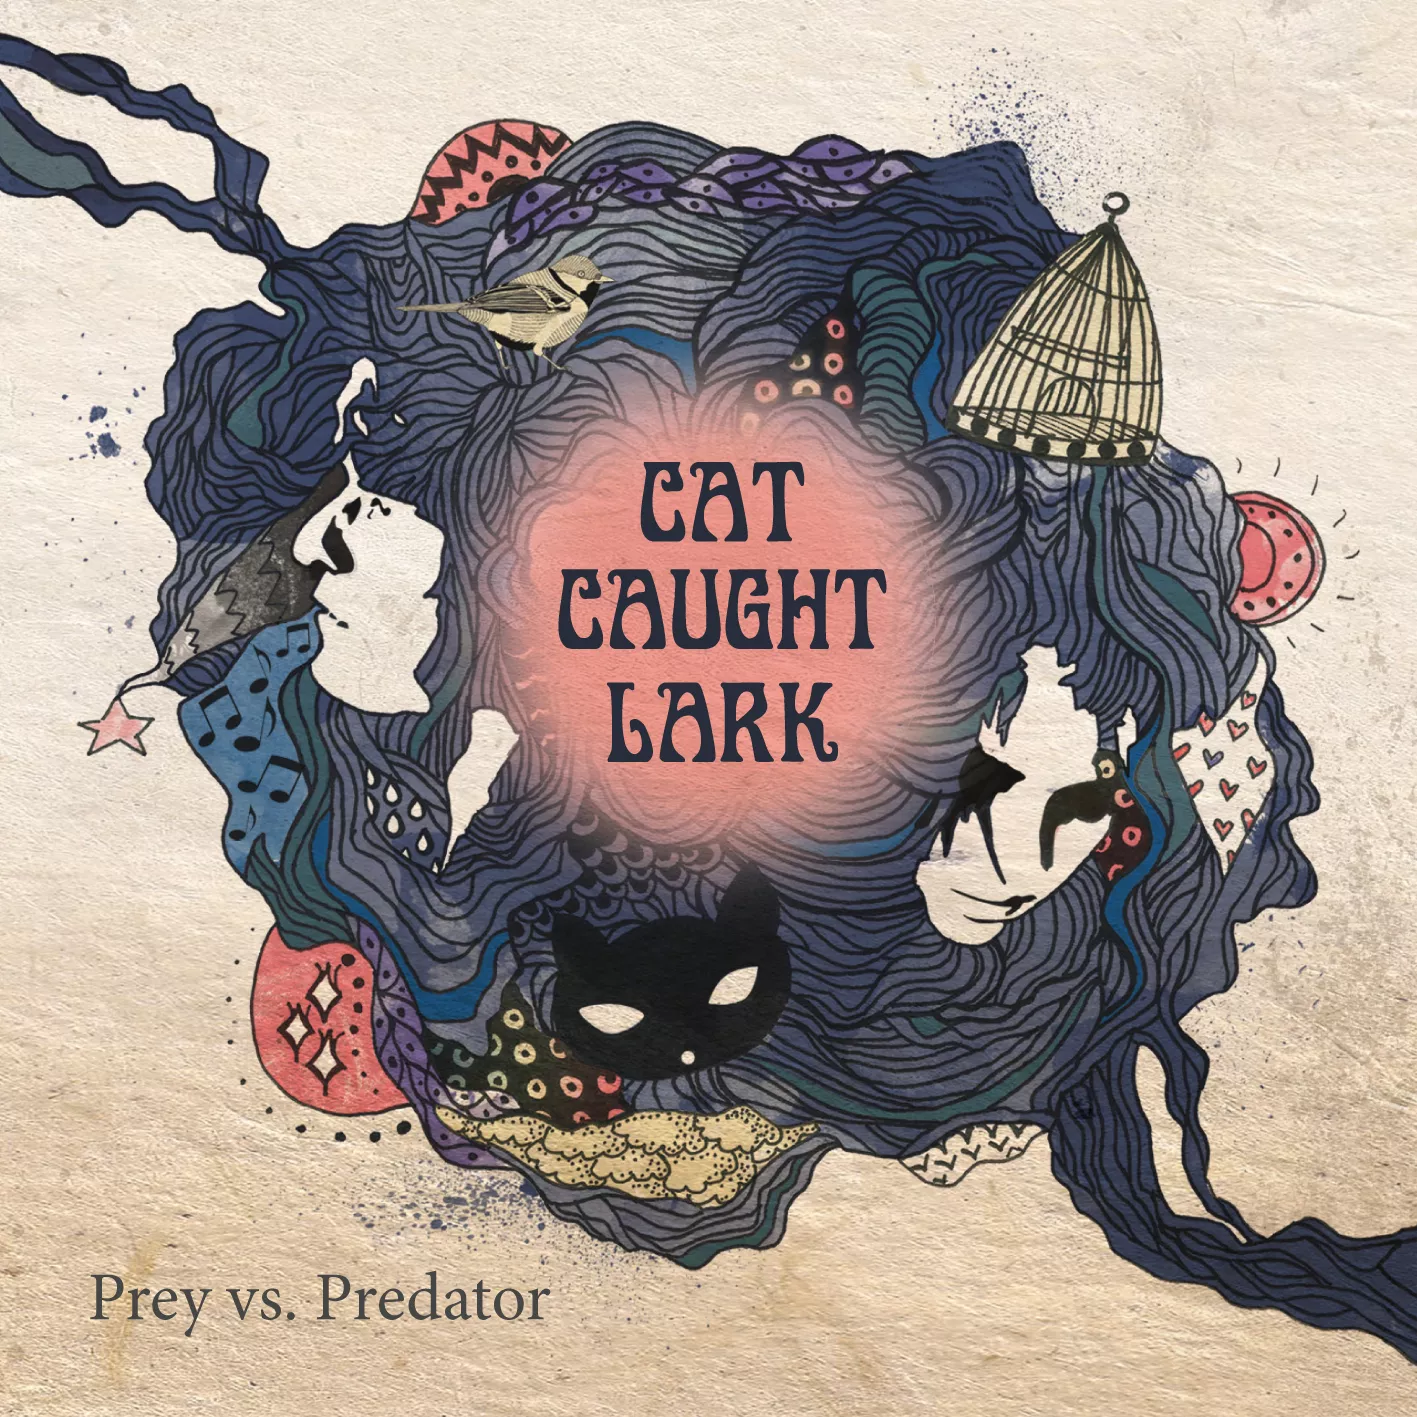 Prey Vs. Predator - Cat Caught Lark